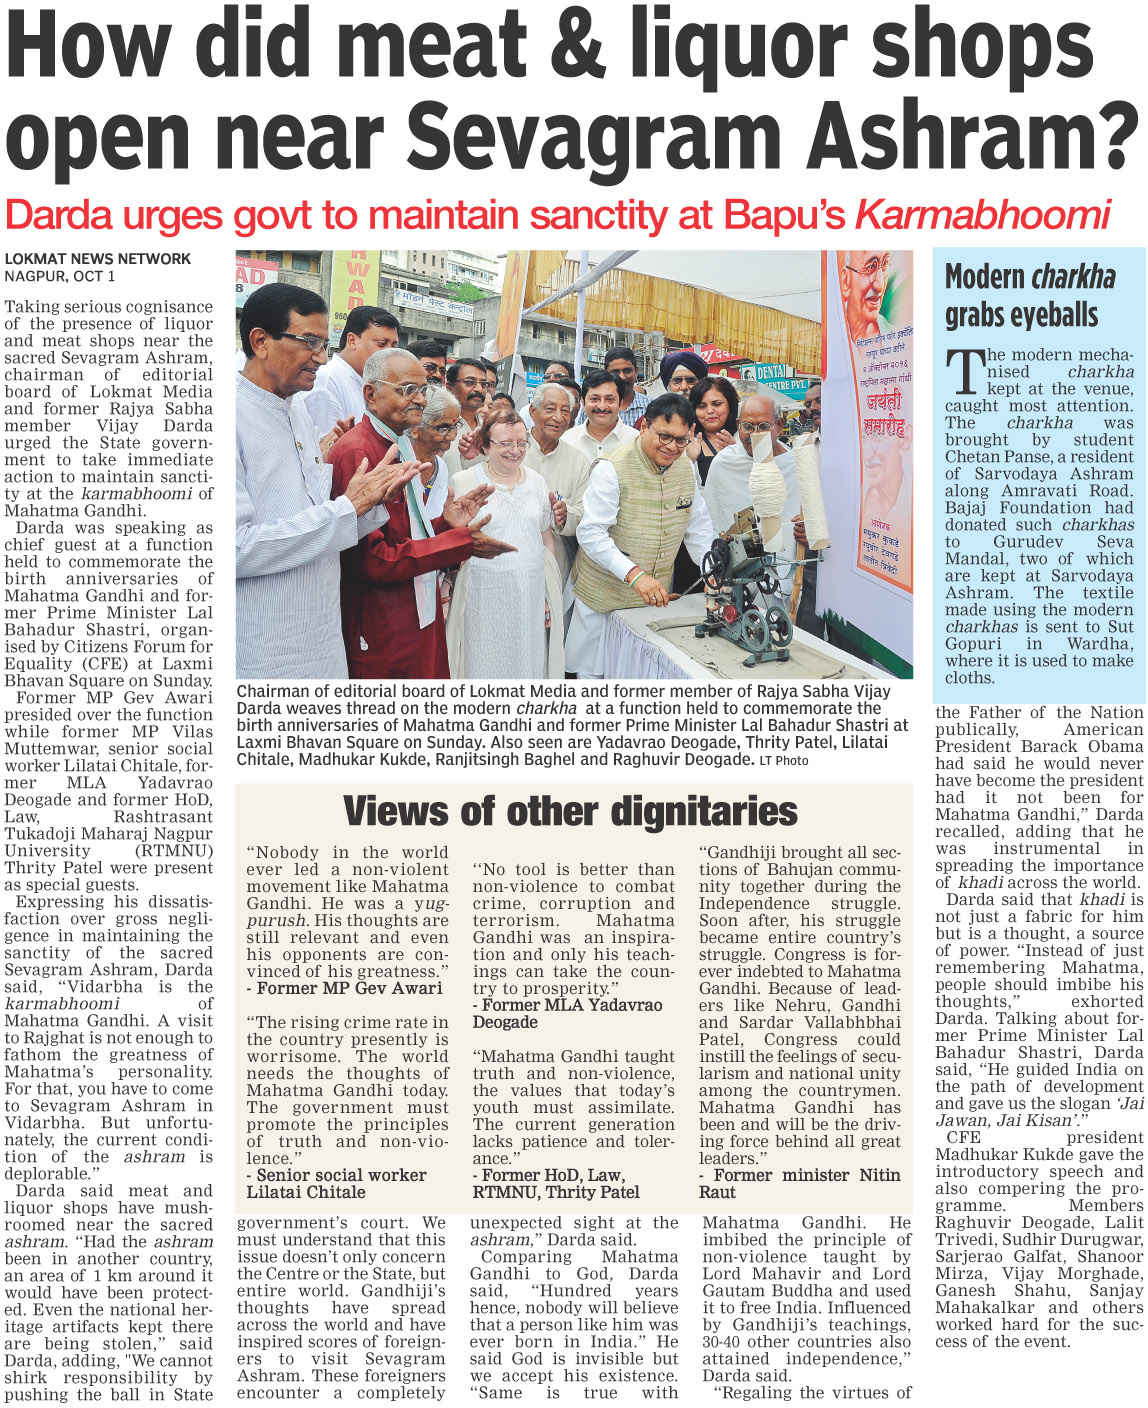 How did meat & liquor shops open near Sevagram Ashram?